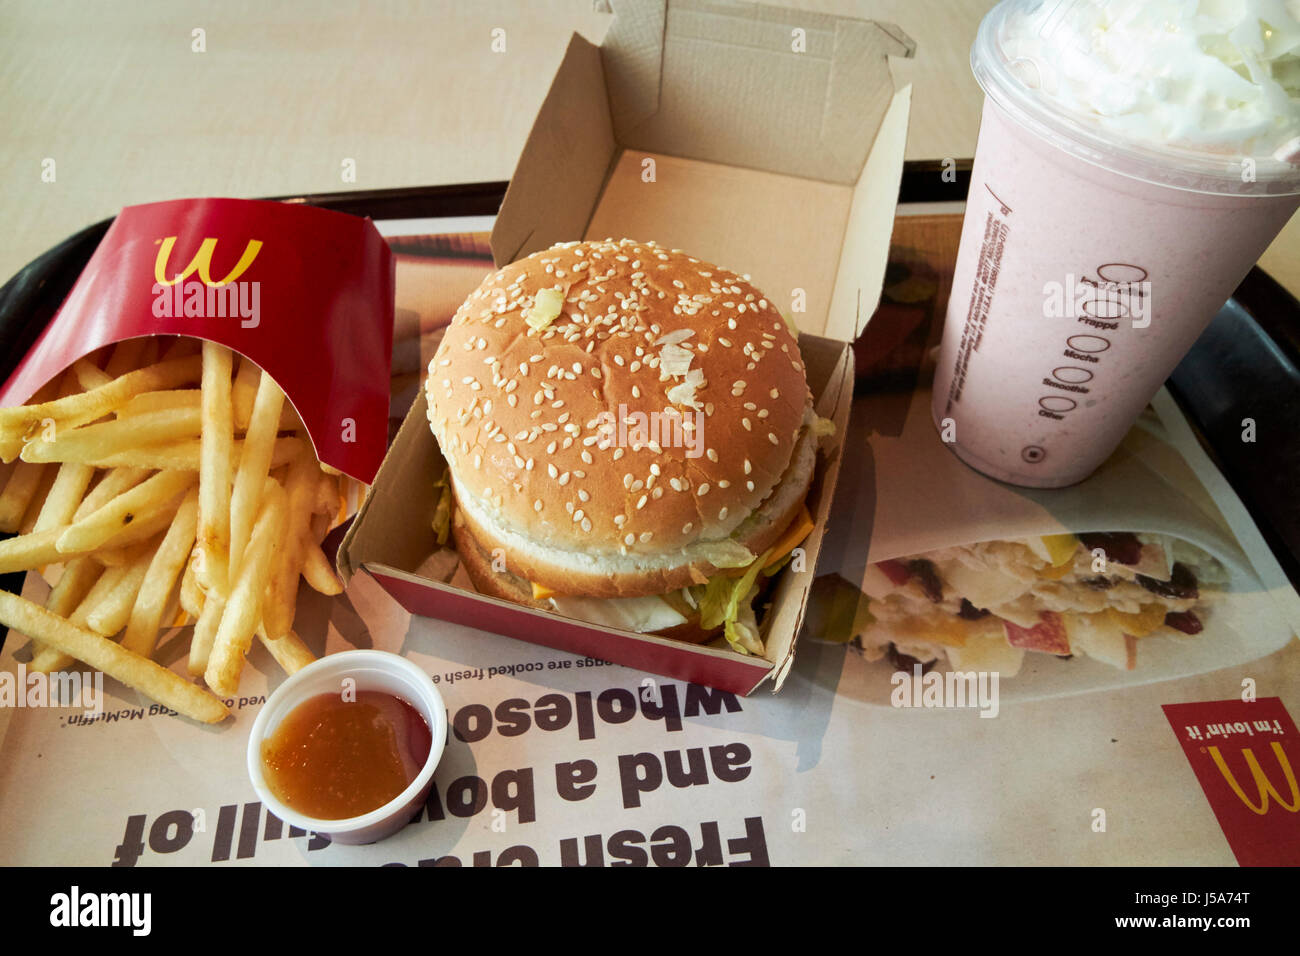 McDonalds big mac meal usa Stock Photo